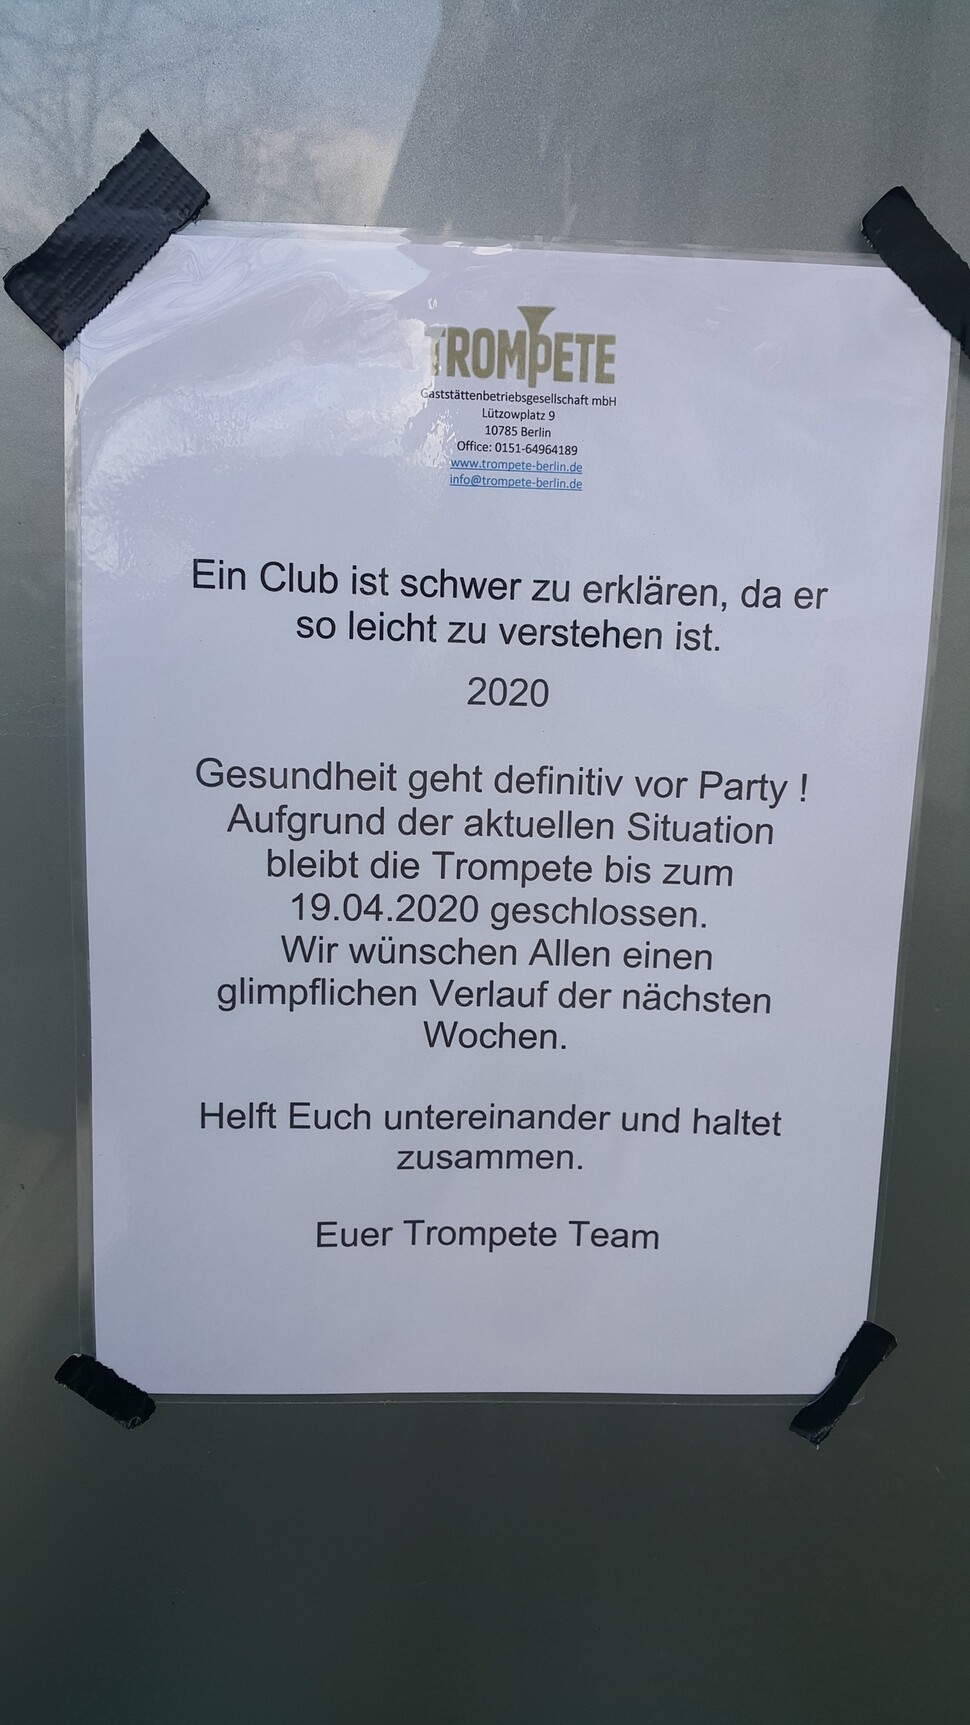 무더기 확진자가 나온 베를린의 한 클럽에 붙은 휴업안내문. 접촉금지령이 내려진 4월19일까지 문을 닫는다는 내용.